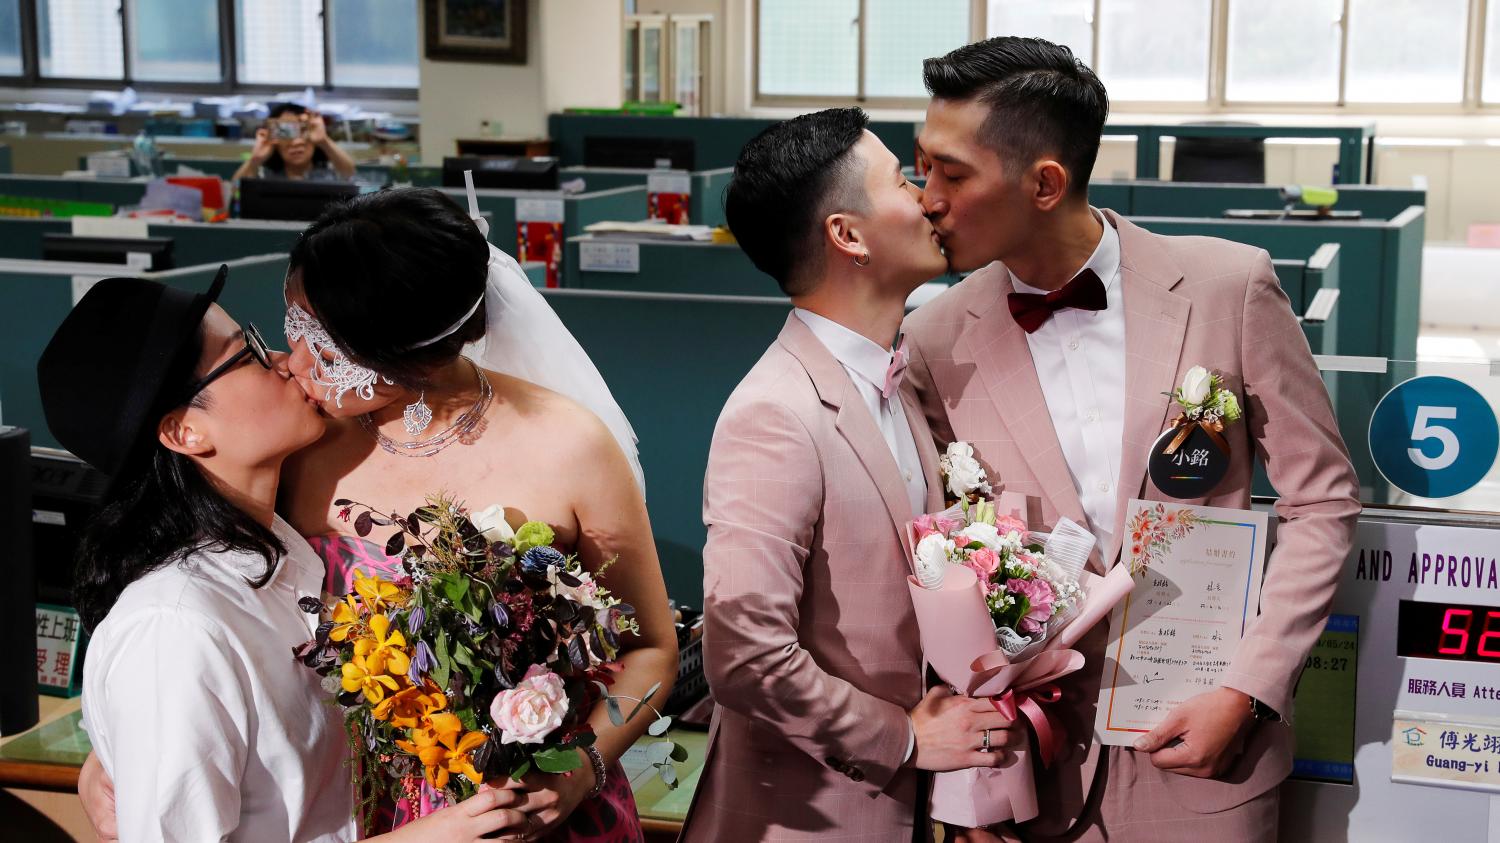 Les premiers mariages entre personnes du même sexe de l'histoire de l'Asie célébrés à Taïwan